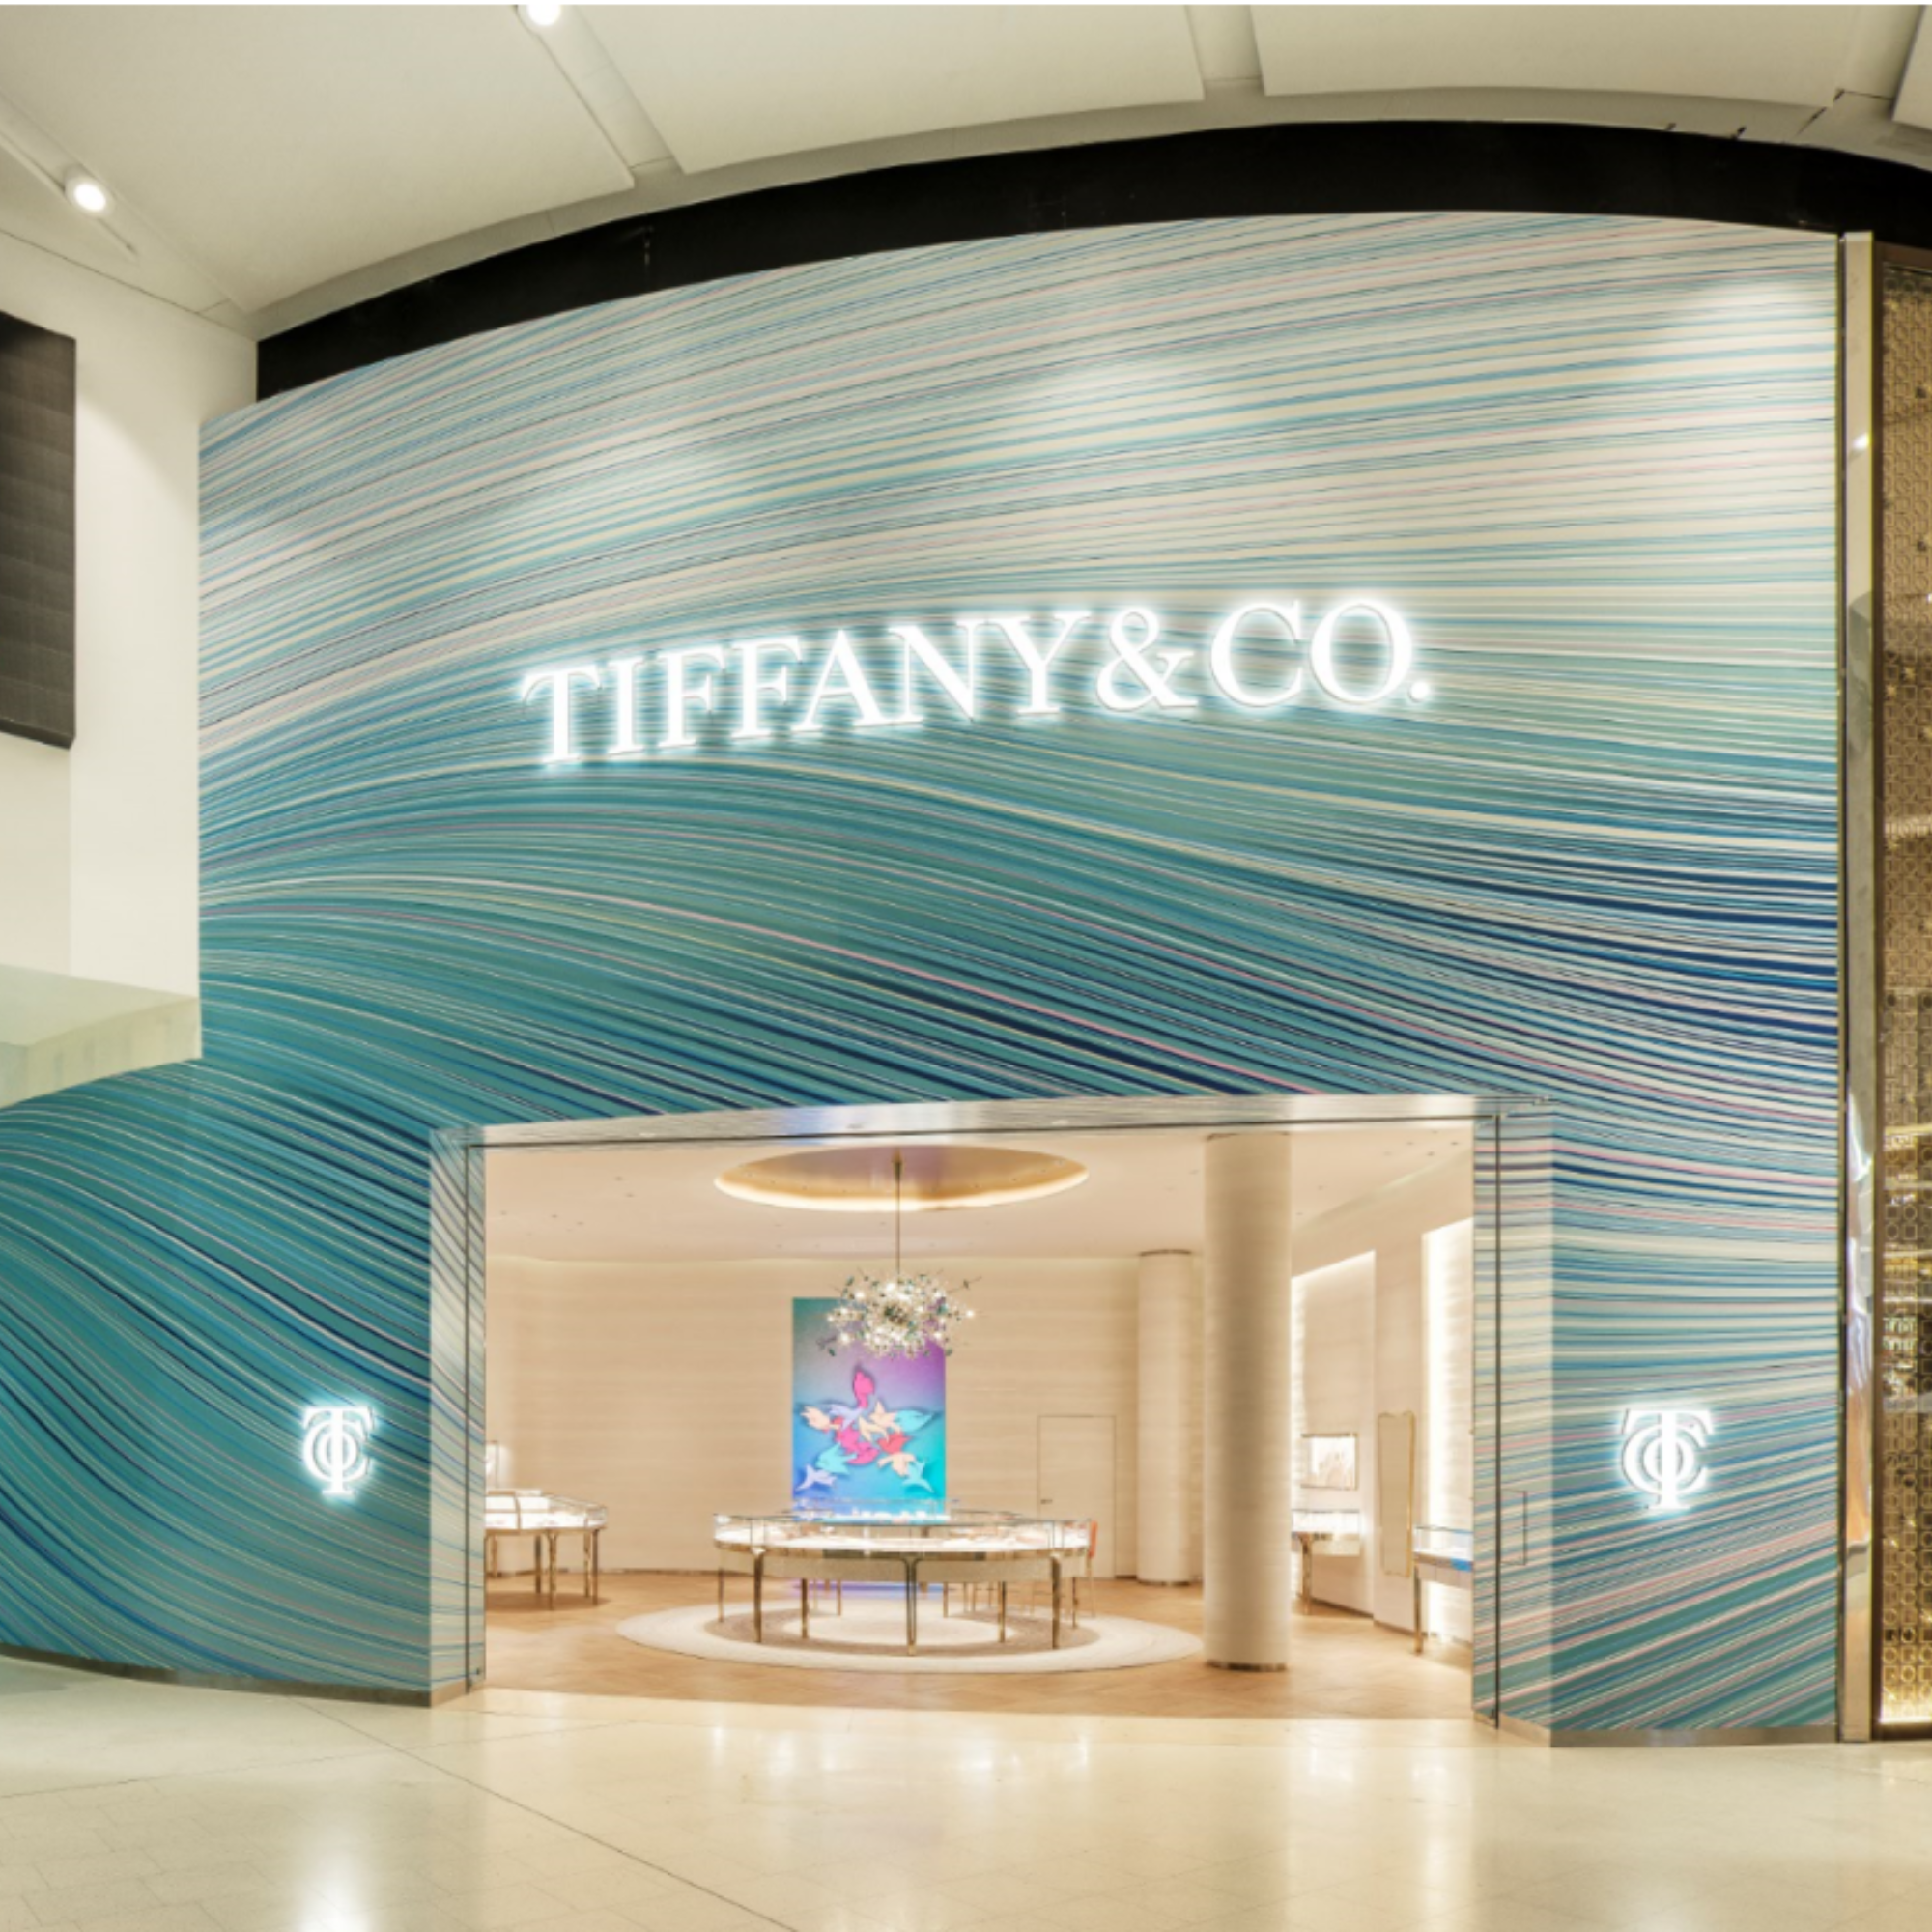 Tiffany & Co. Marrickville